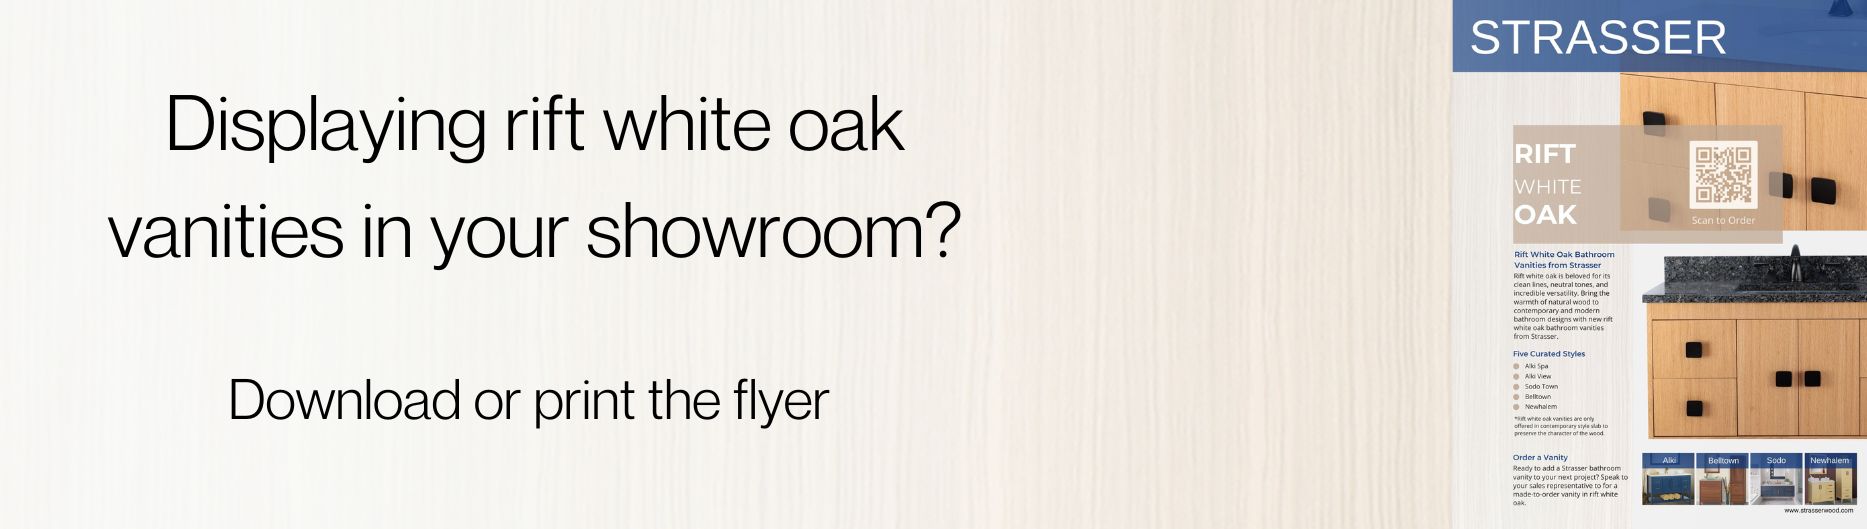 Rift white oak bathroom vanity from Strasser